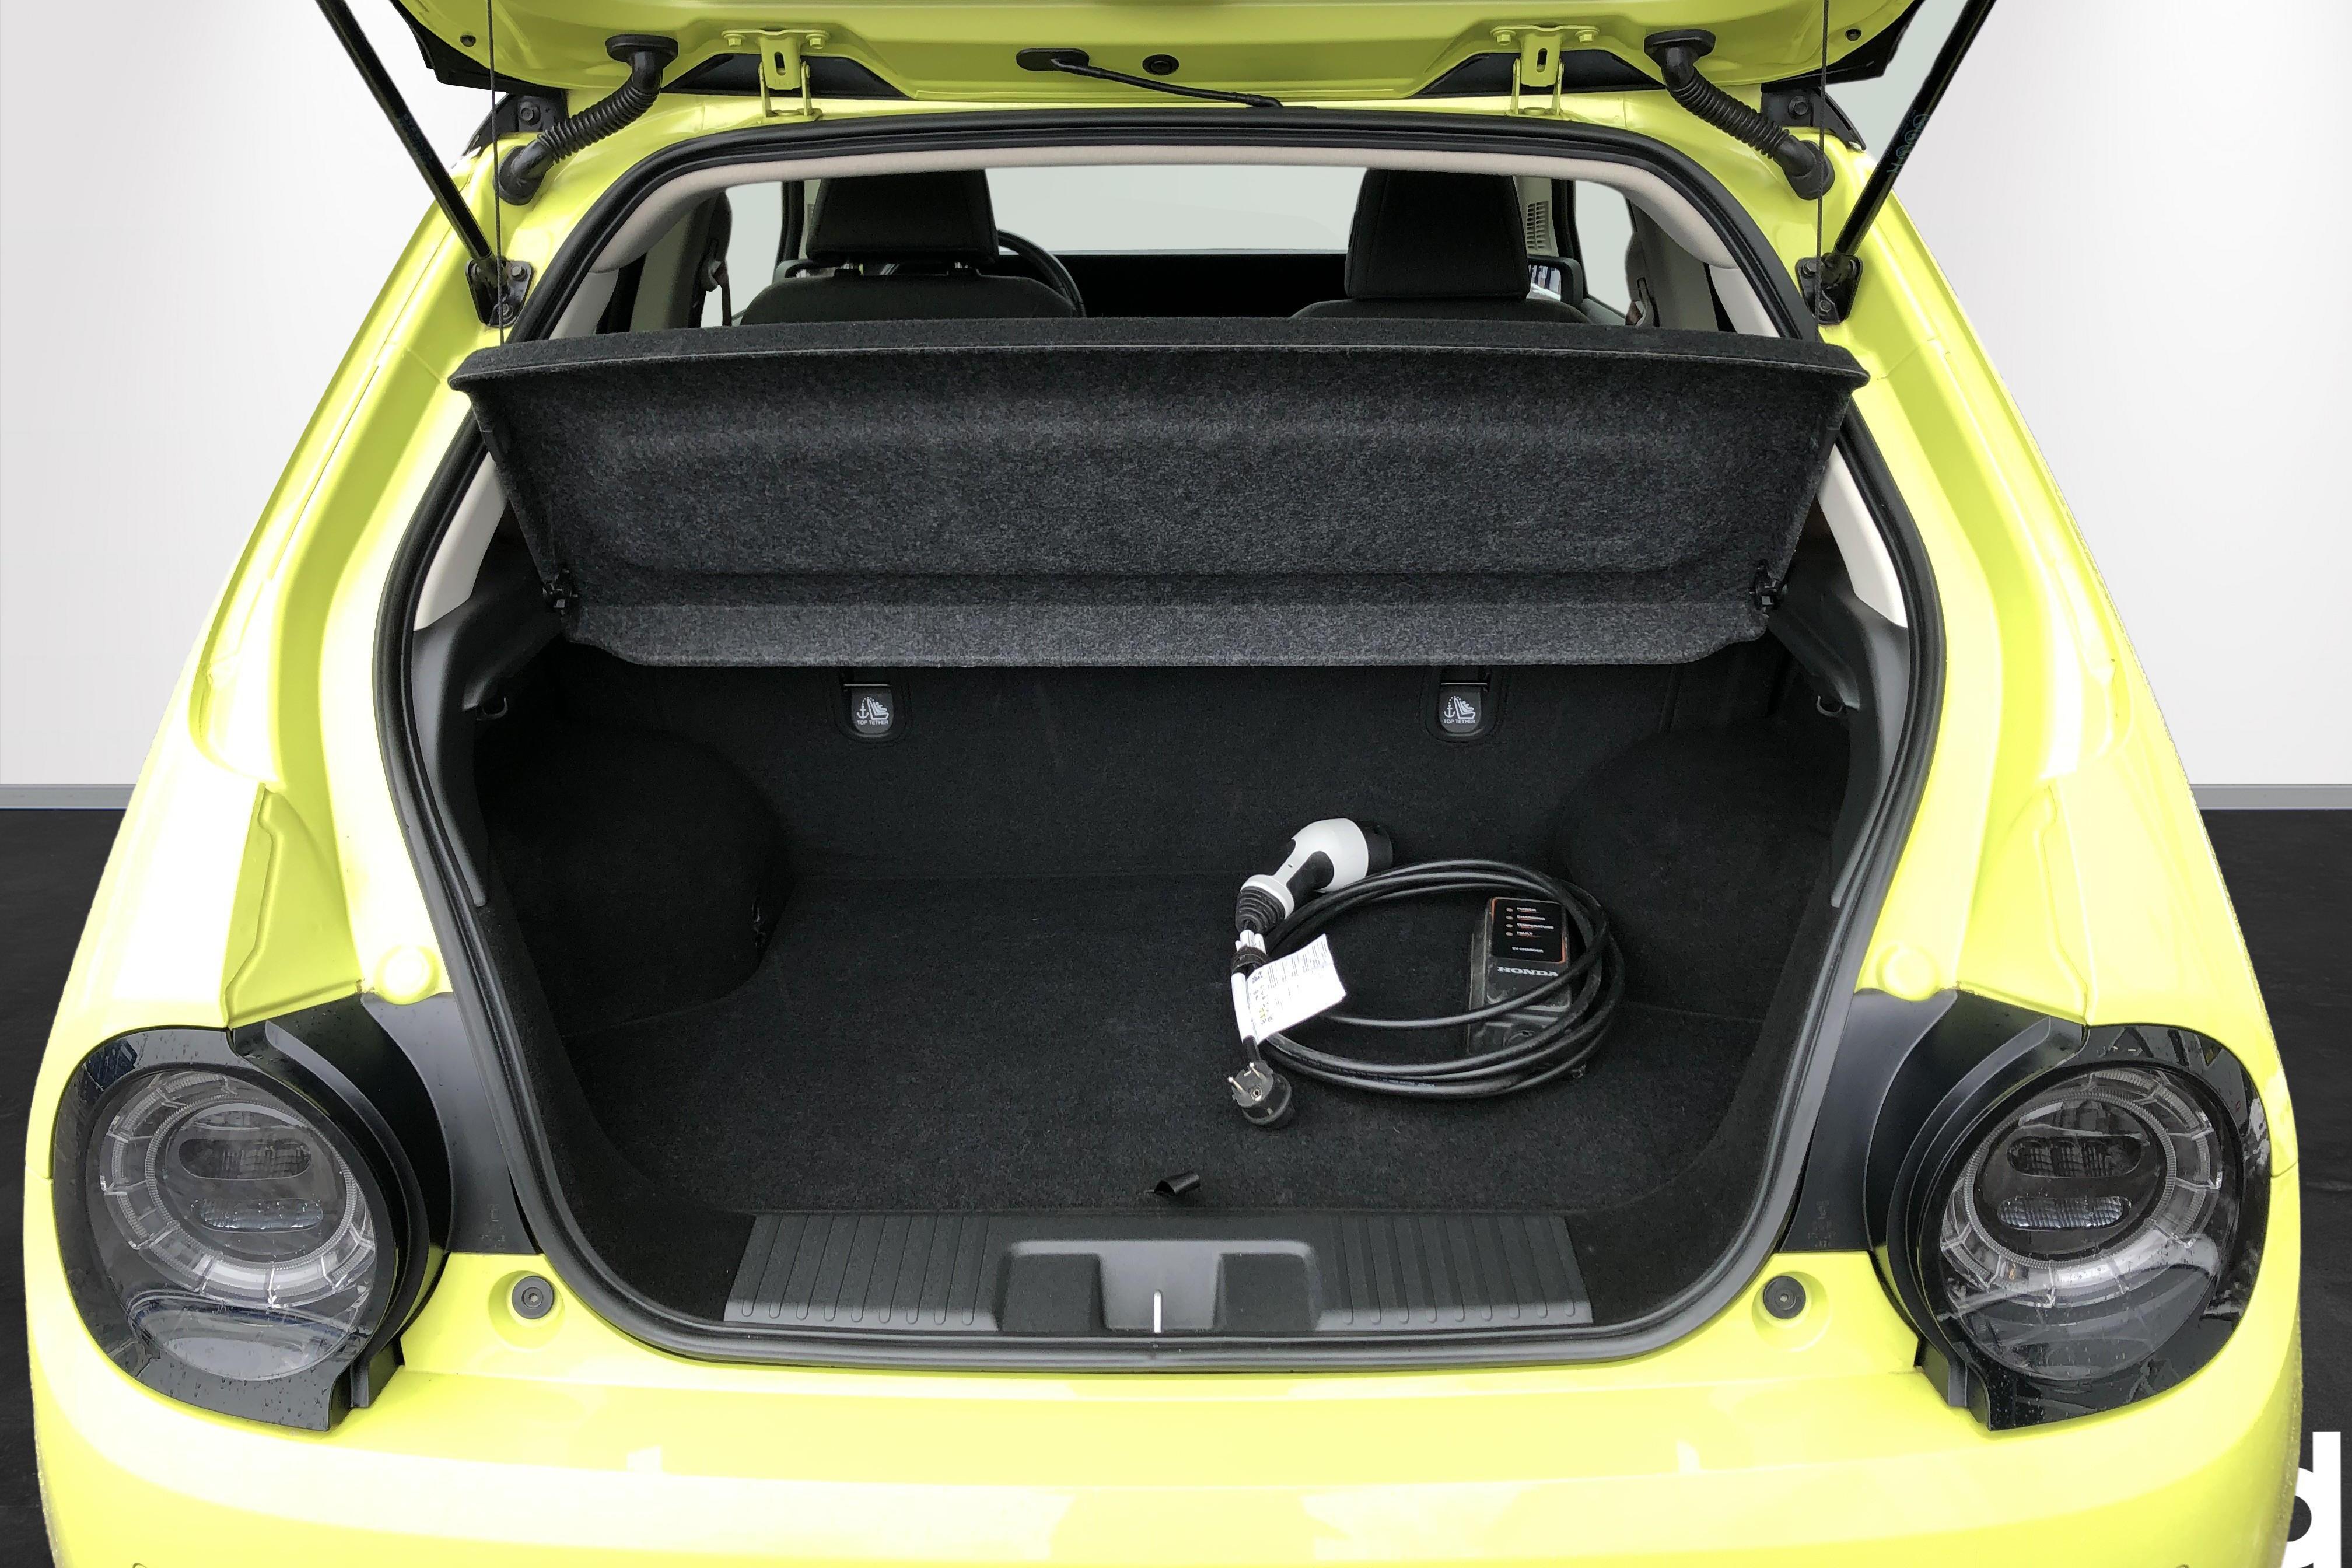 Honda E 35,5 kWh (154hk) - 11 110 km - Automatic - yellow - 2020